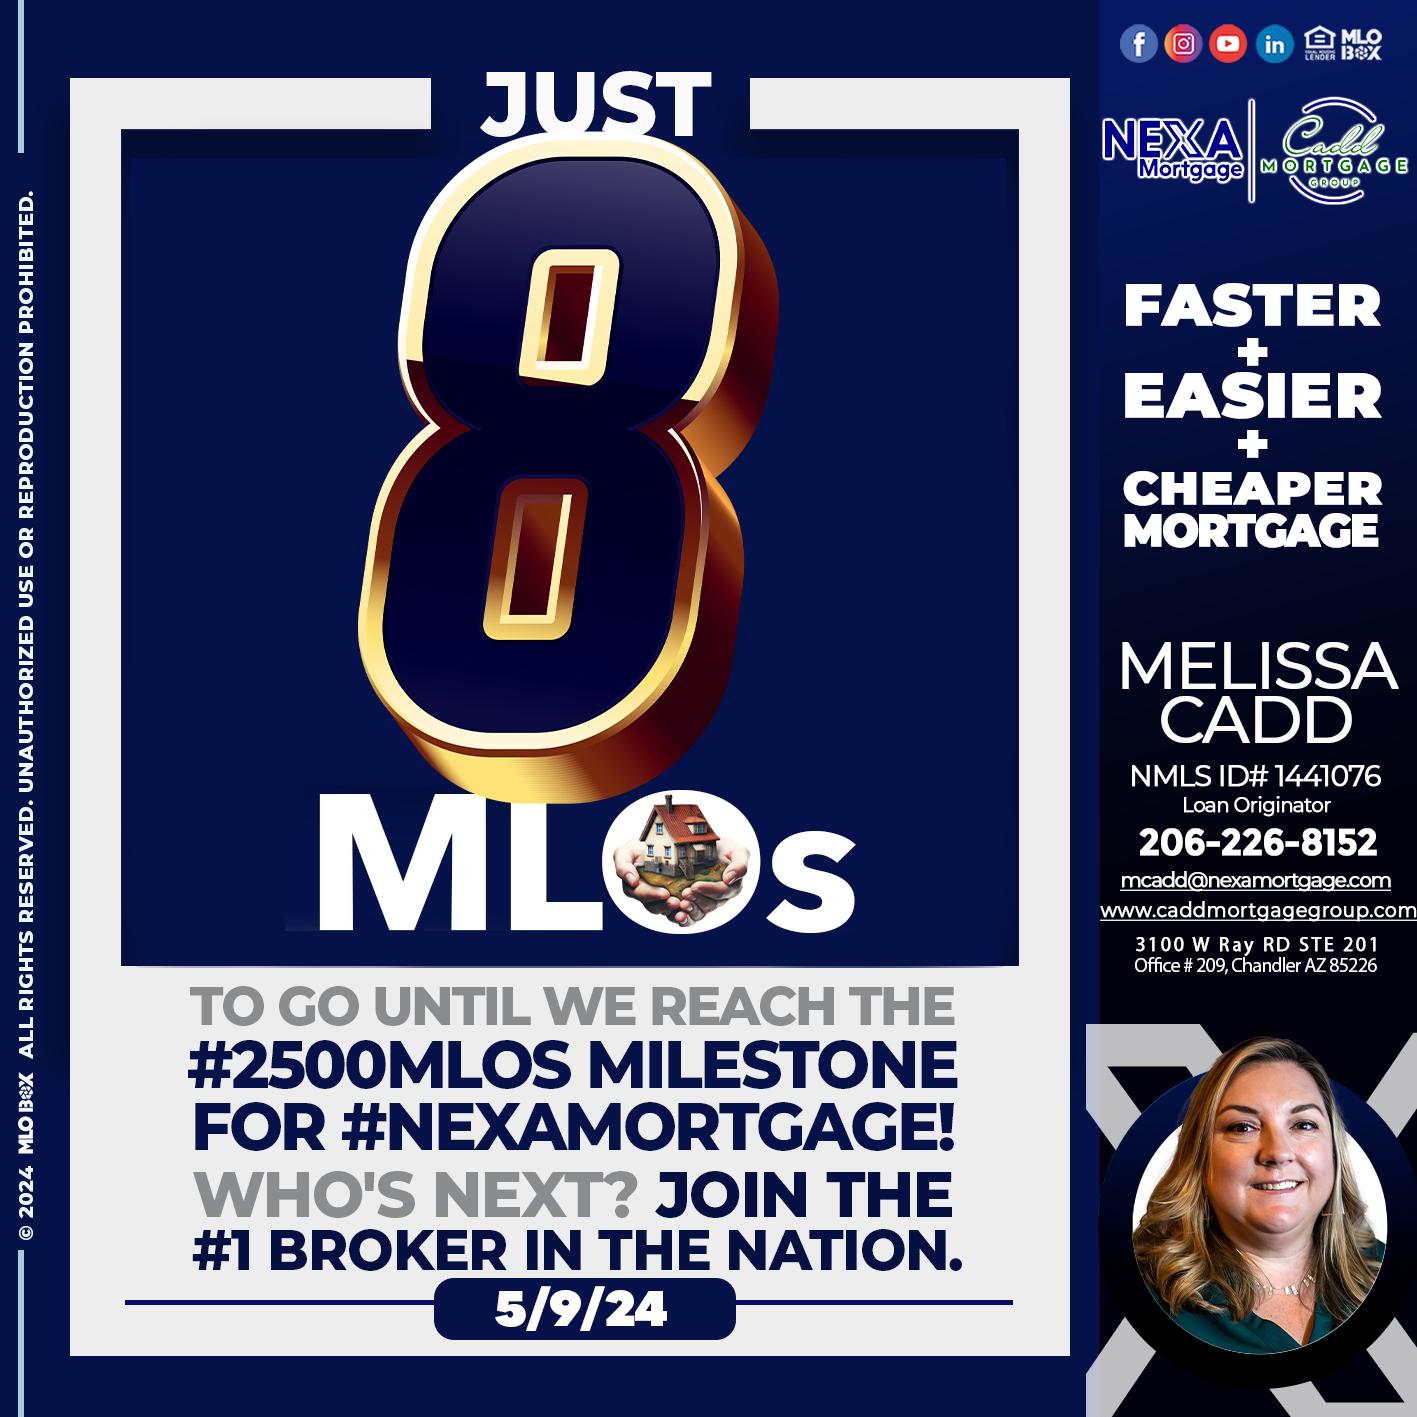 JUST 8 MLOS - Melissa Cadd -Loan Originator